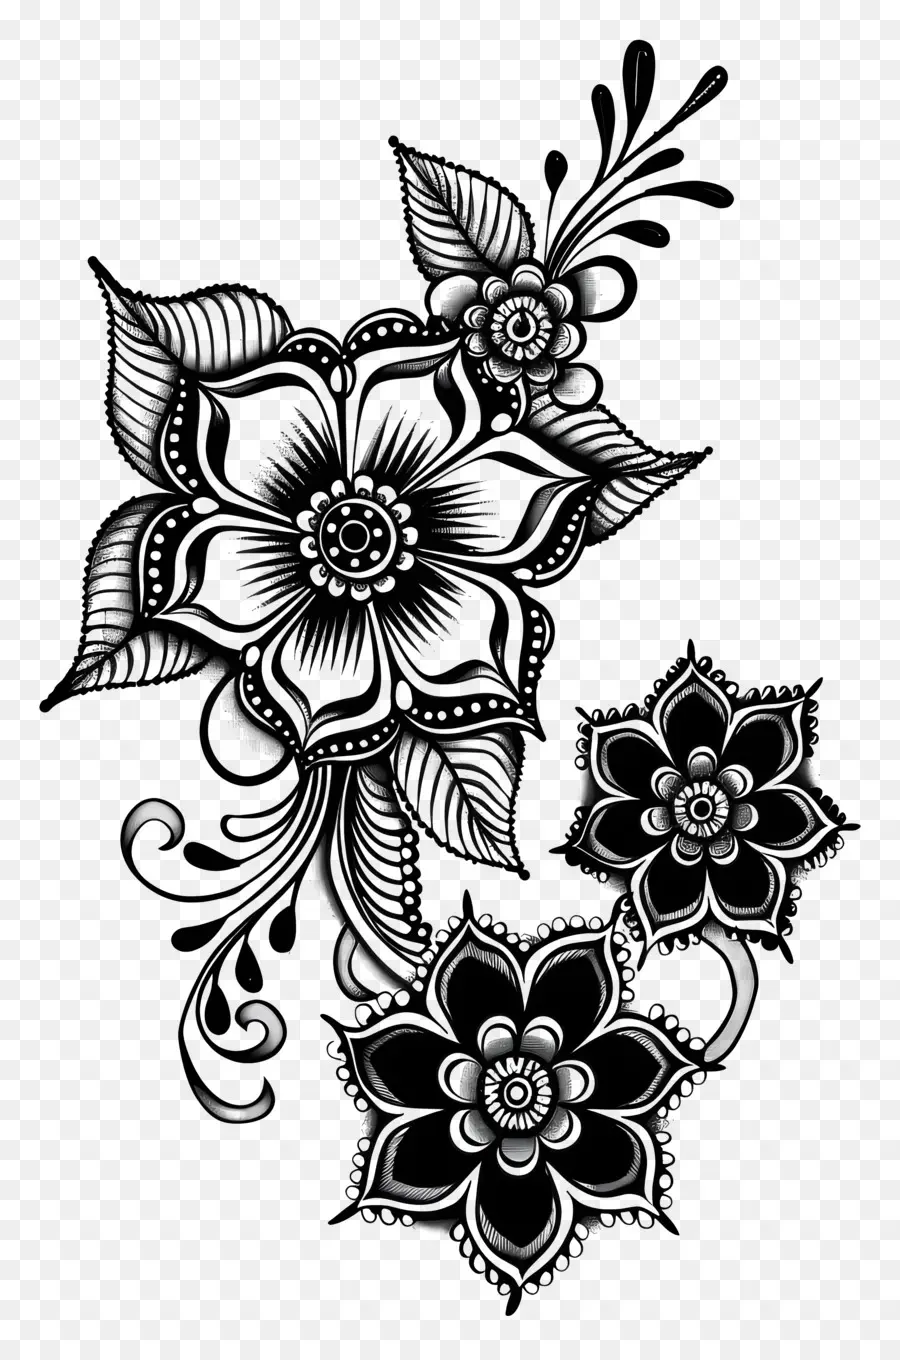 hoa mẫu - Hoa văn hoa phức tạp màu đen và trắng